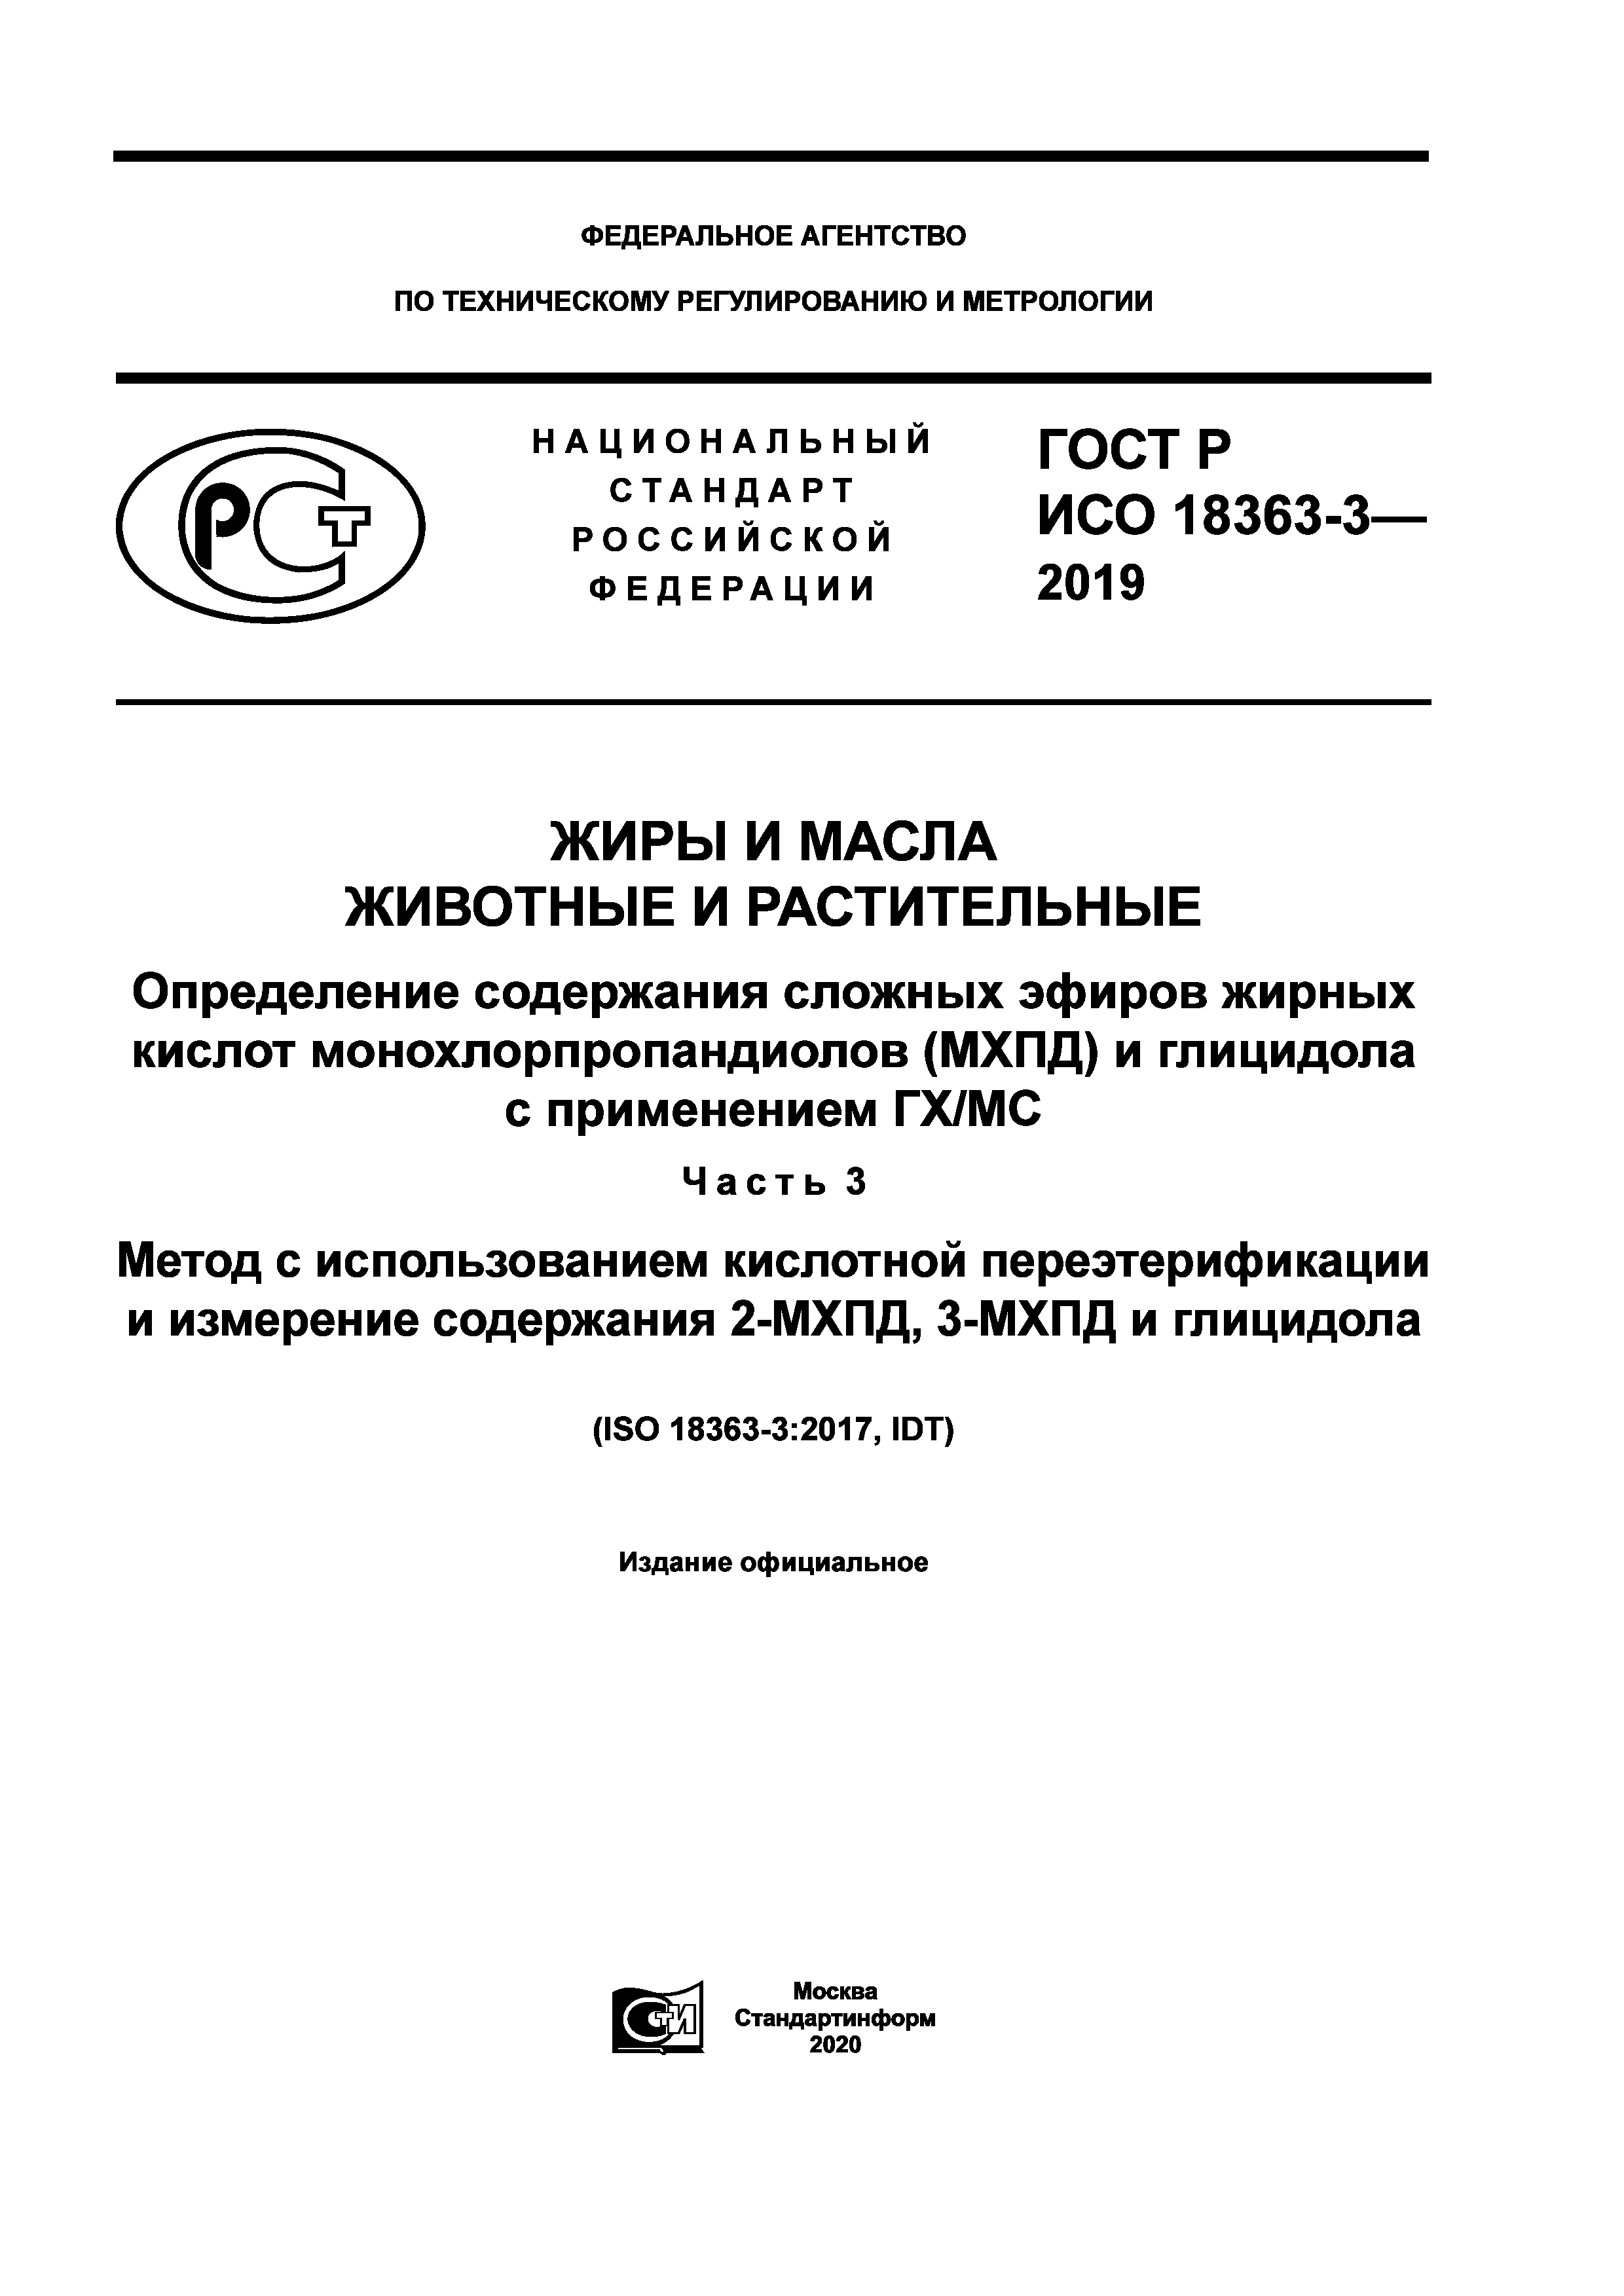 ГОСТ Р ИСО 18363-3-2019